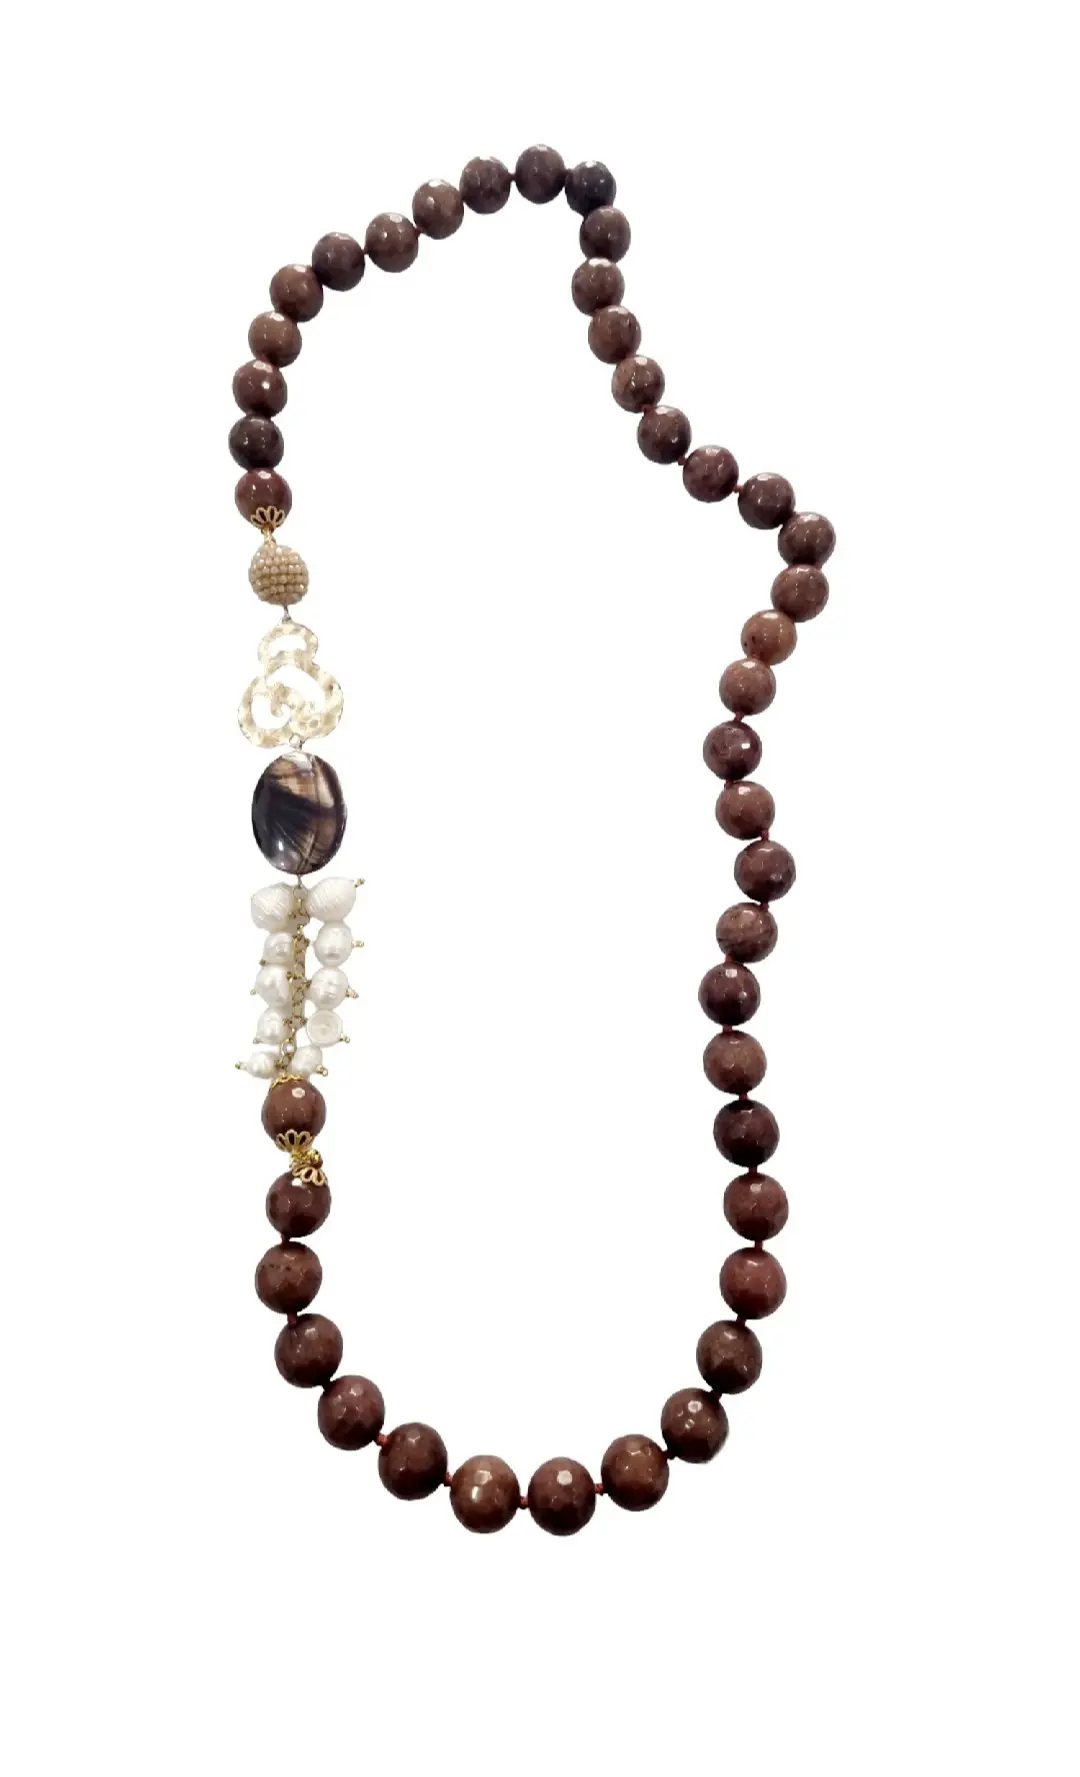 Collar elaborado con Ágata Marrón, Perlas de Río, Nácar, Latón y cristales – Largo 78cm